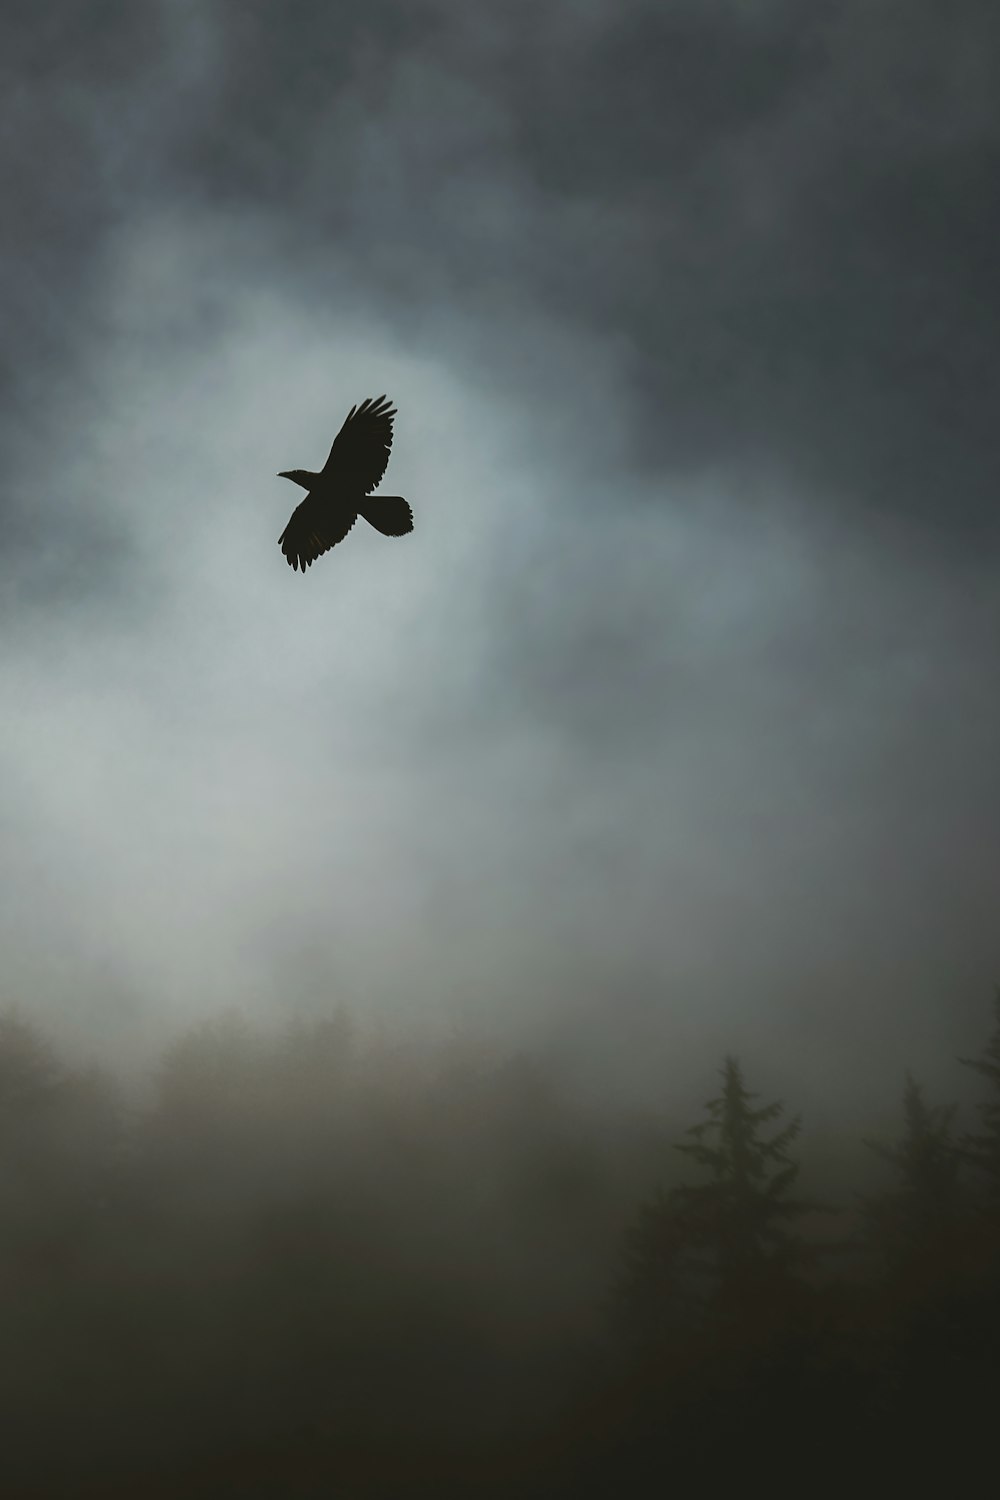 fotografia em escala de cinza do pássaro voando no céu